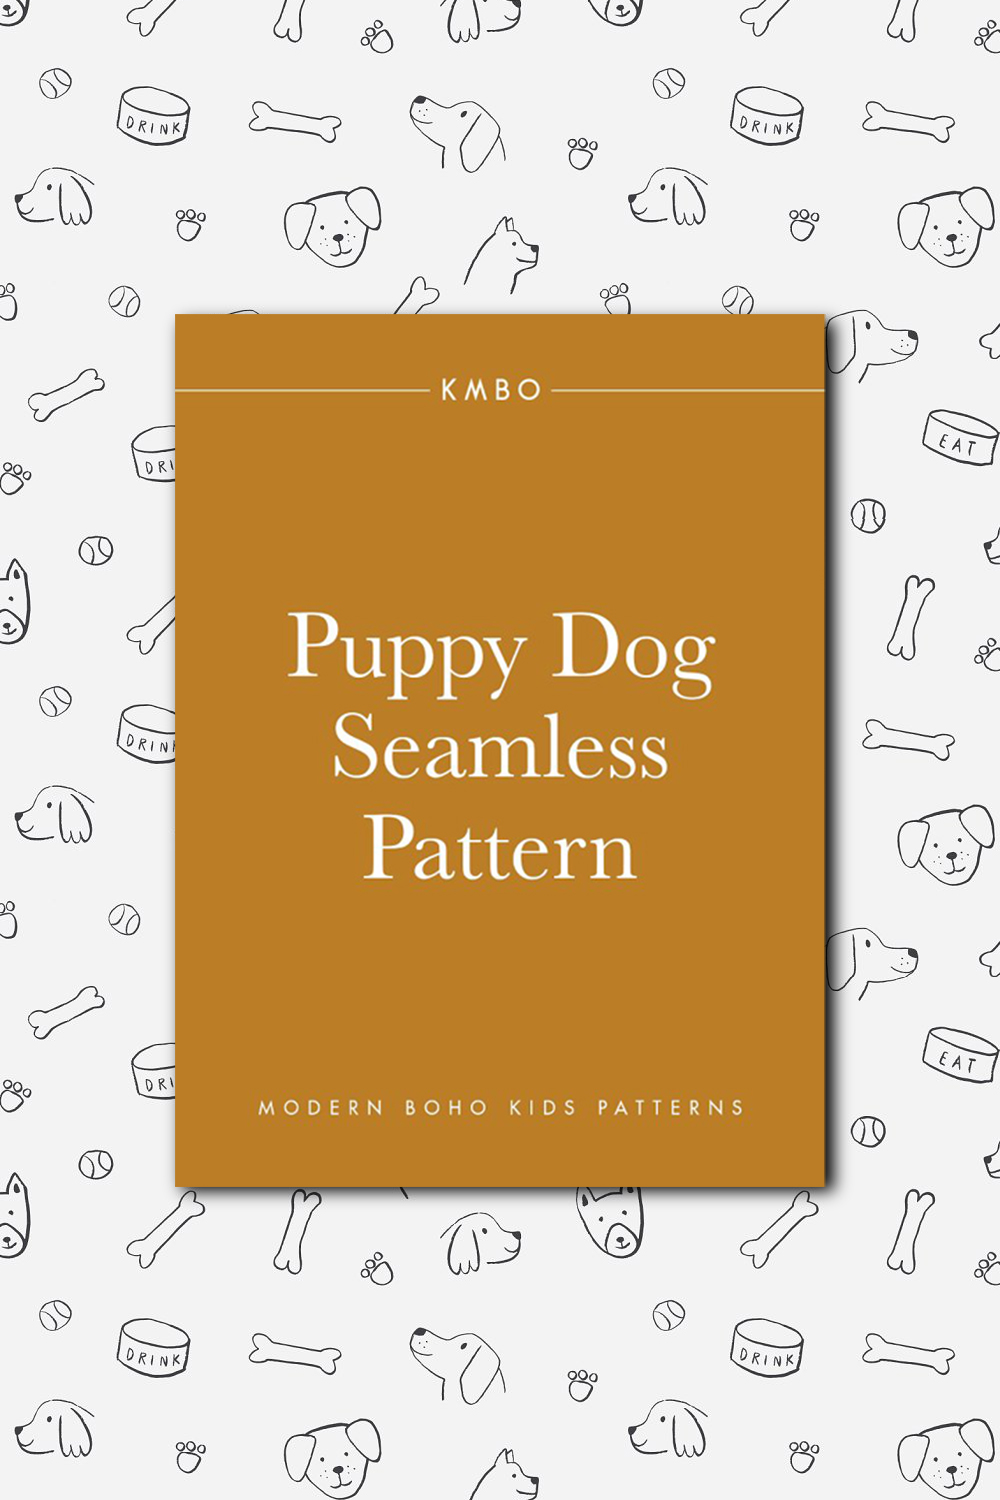 Puppy Dog Seamless Pattern.